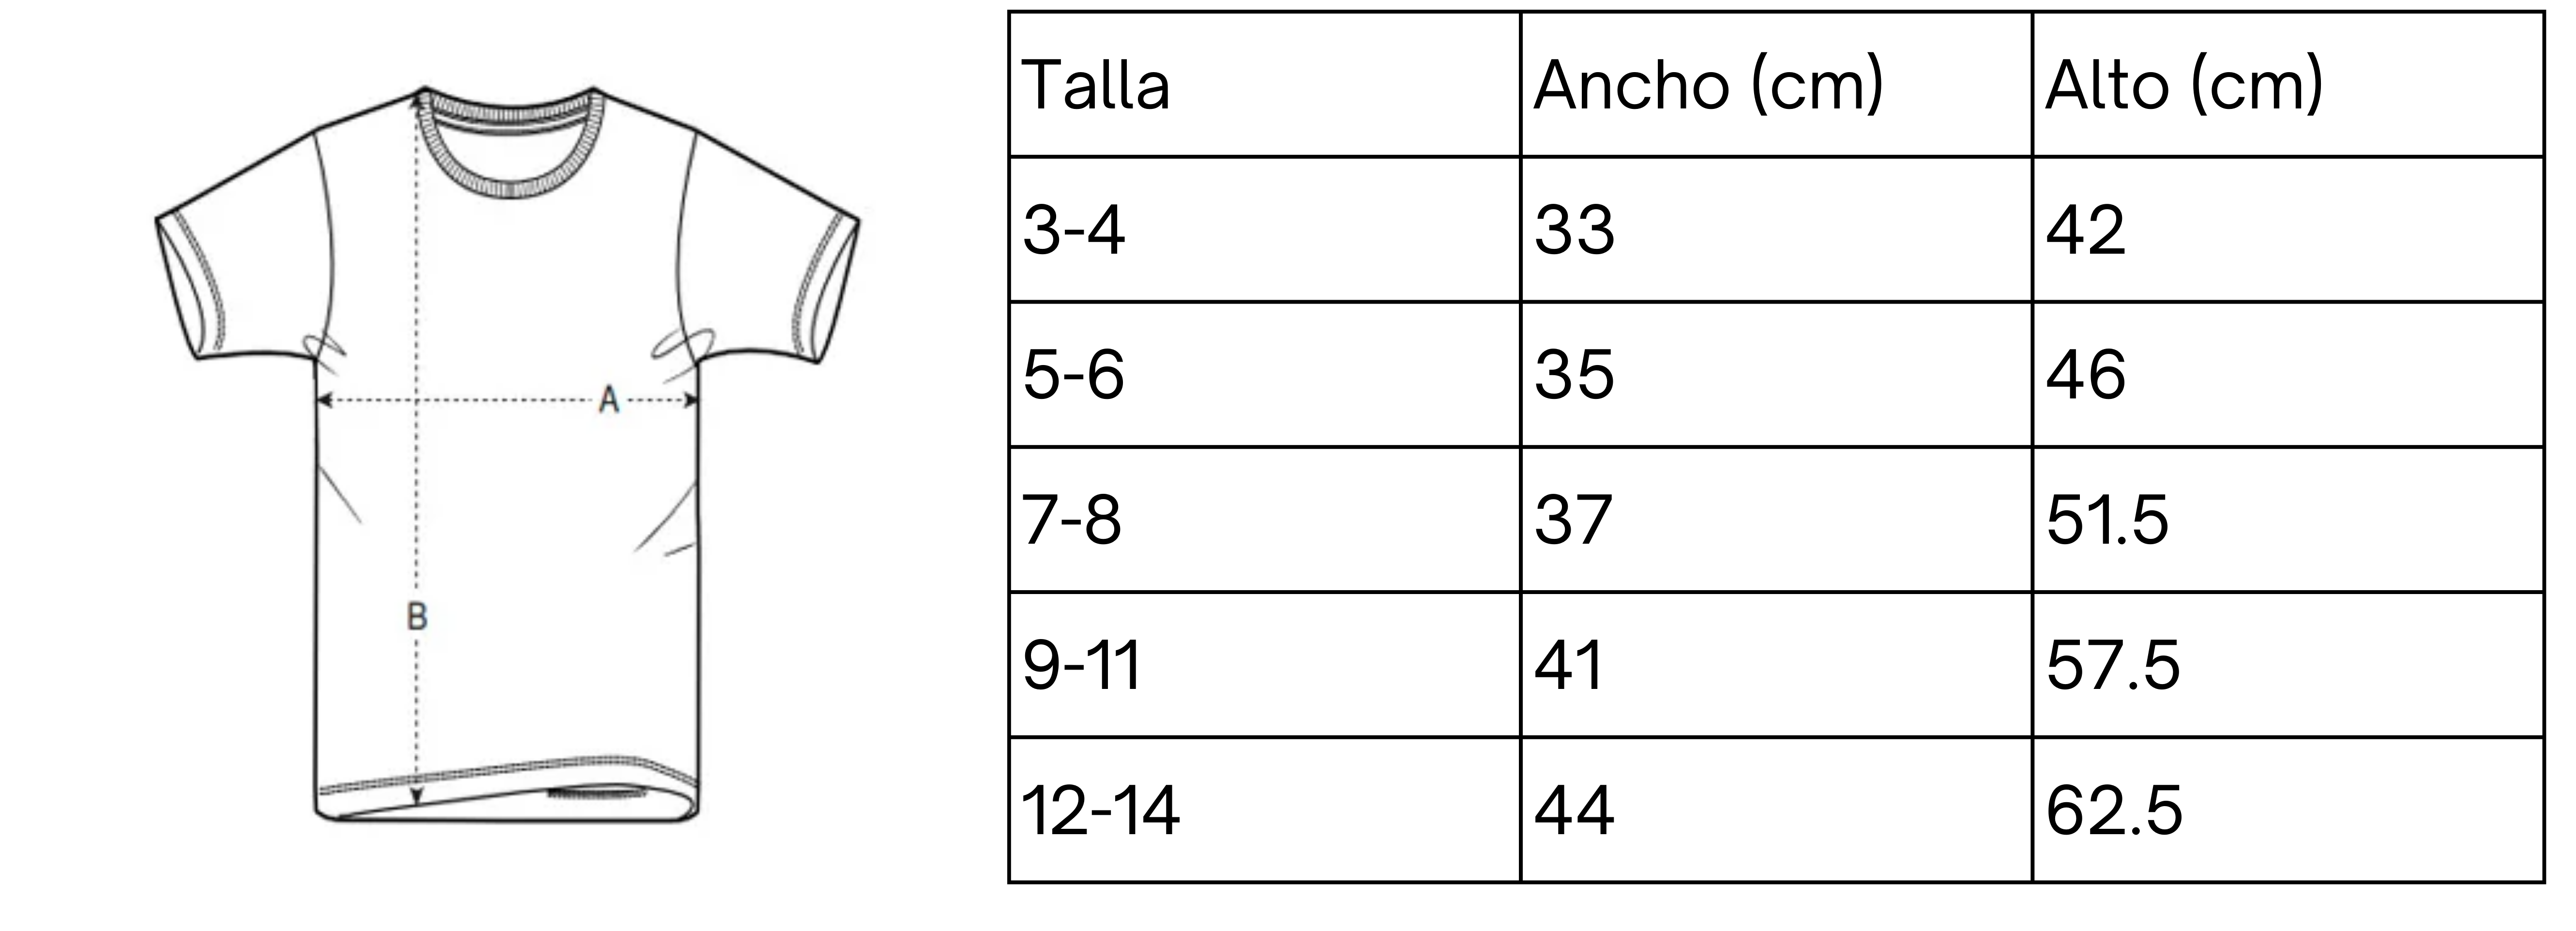 Tabla De Medidas Camisetas Básicas El Nano (1)